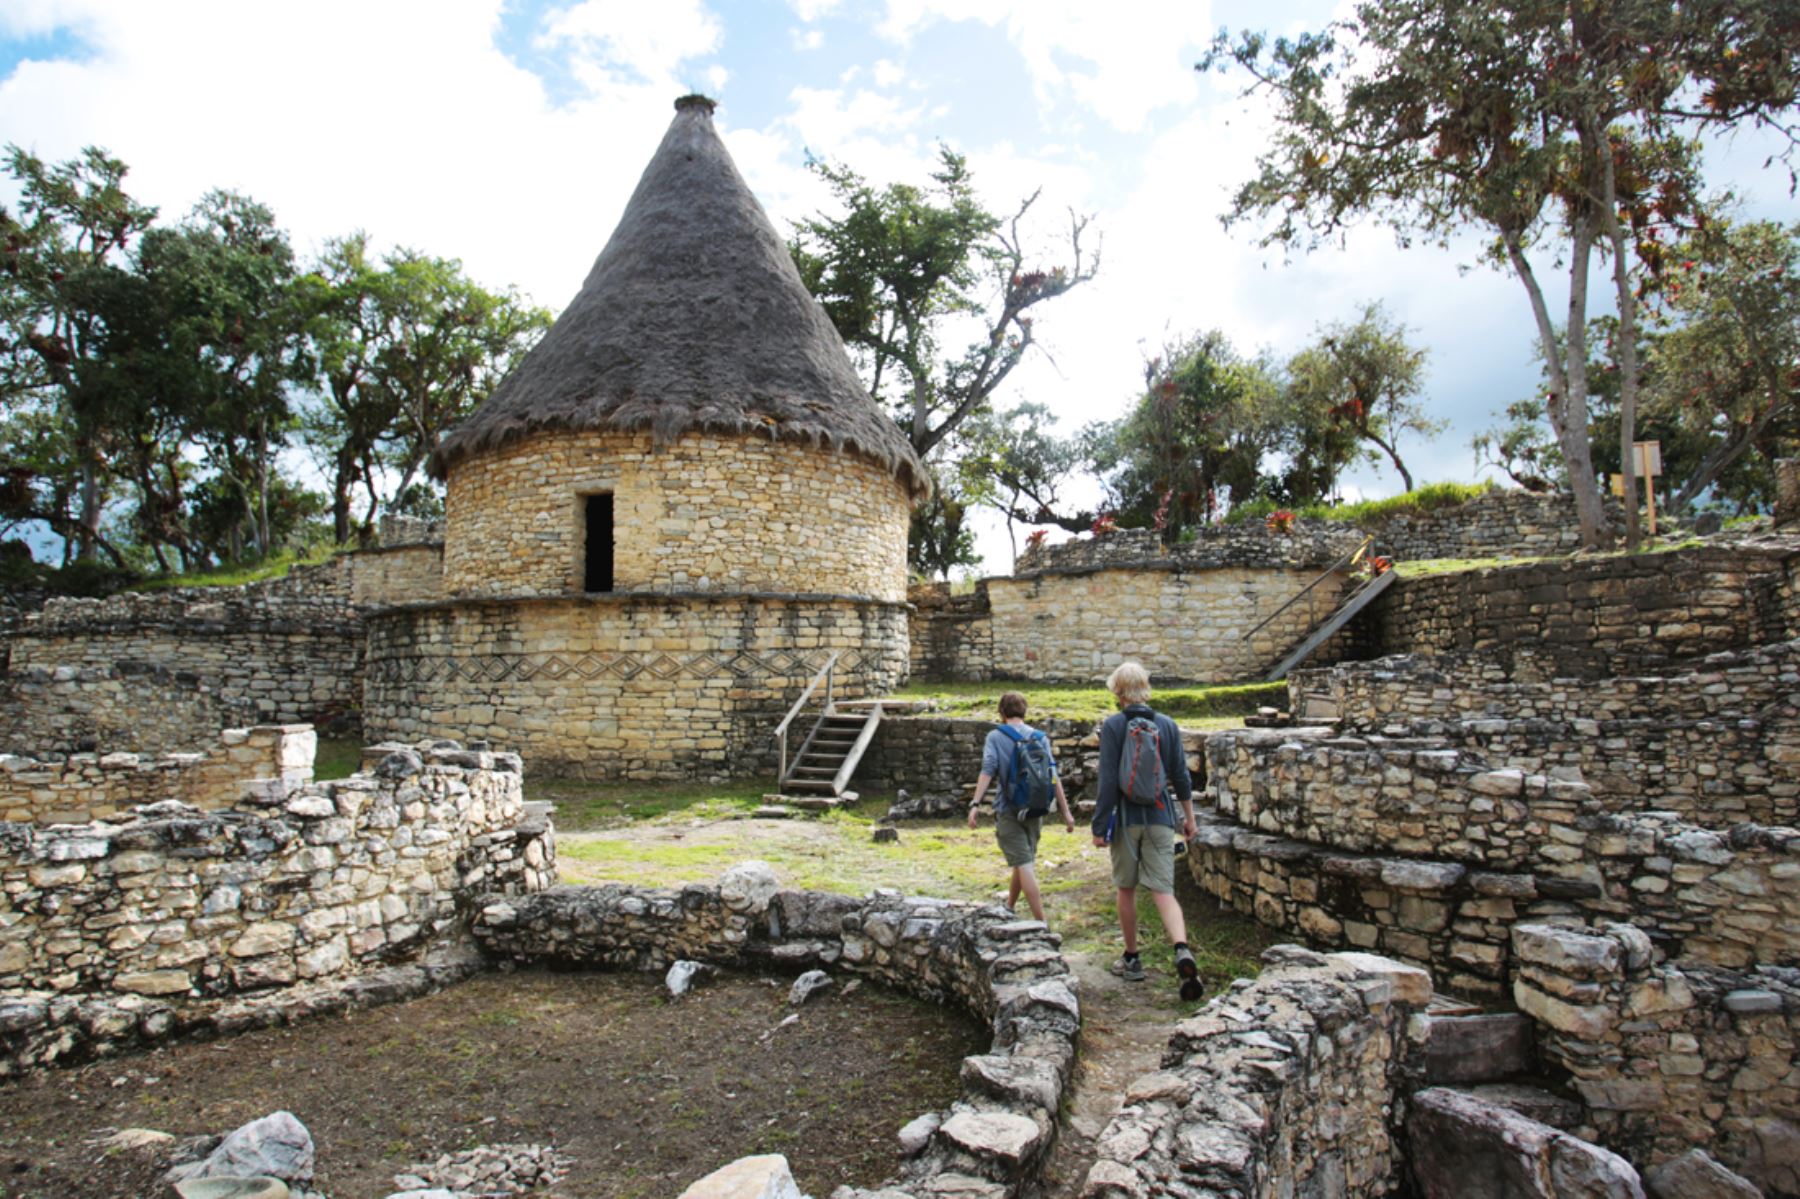 El complejo arqueológico de Kuélap está ubicado en la provincia de Luya, región Amazonas, y pertenece a la cultura preincaica Chachapoyas. Foto: ANDINA/archivo